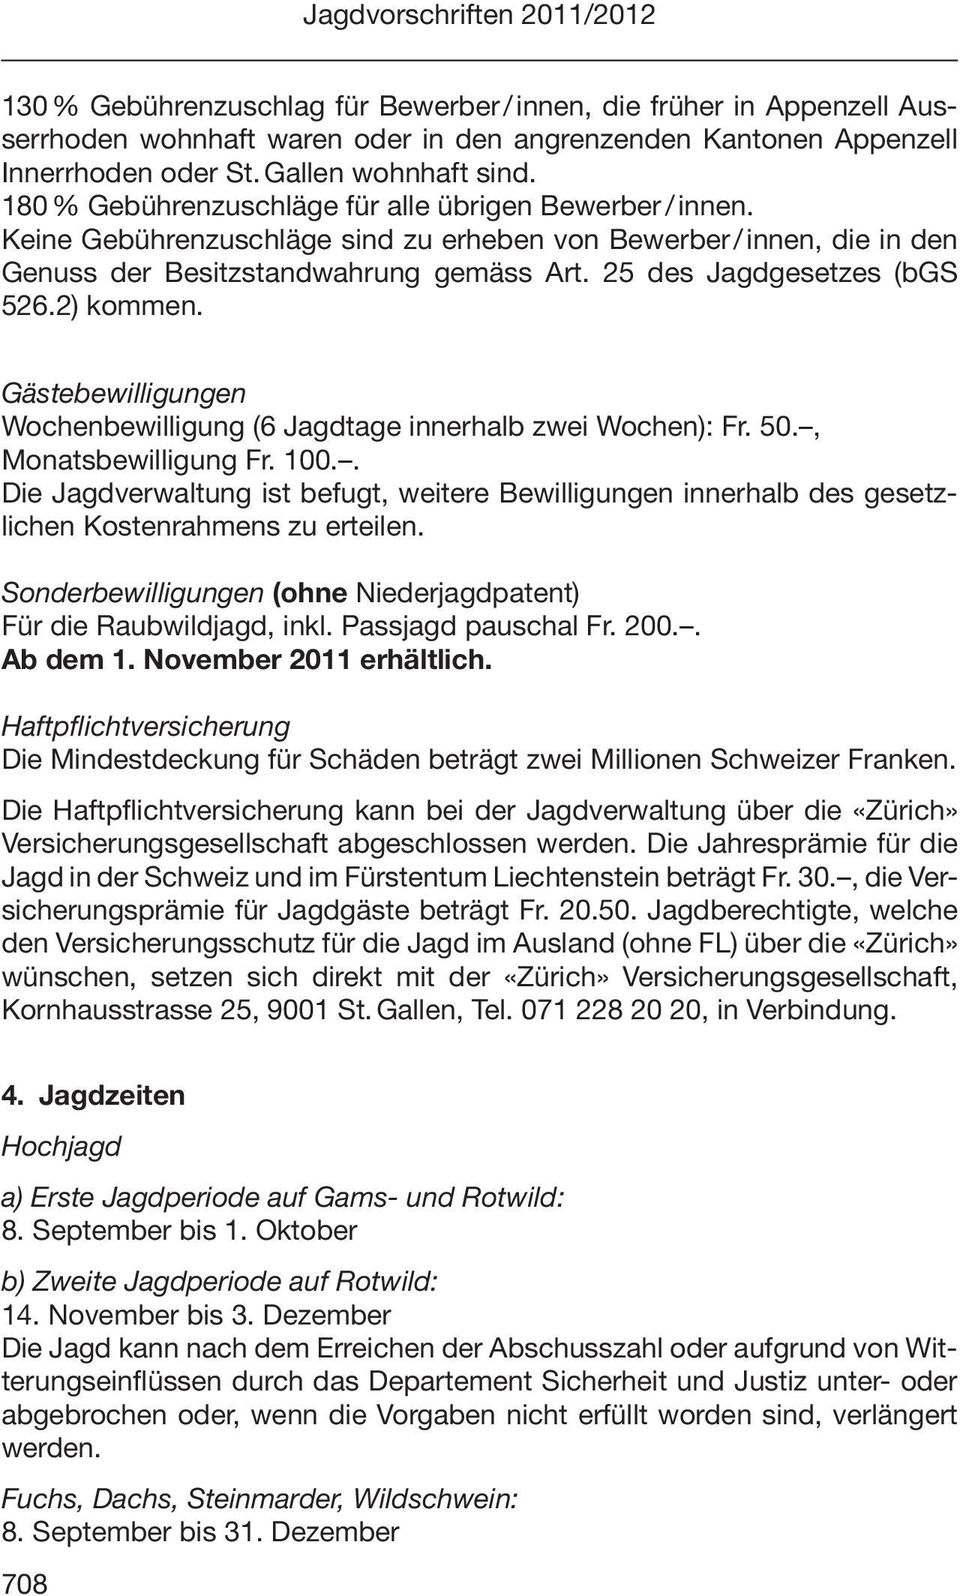 25 des Jagdgesetzes (bgs 526.2) kommen. Gästebewilligungen Wochenbewilligung (6 Jagdtage innerhalb zwei Wochen): Fr. 50., Monatsbewilligung Fr. 100.